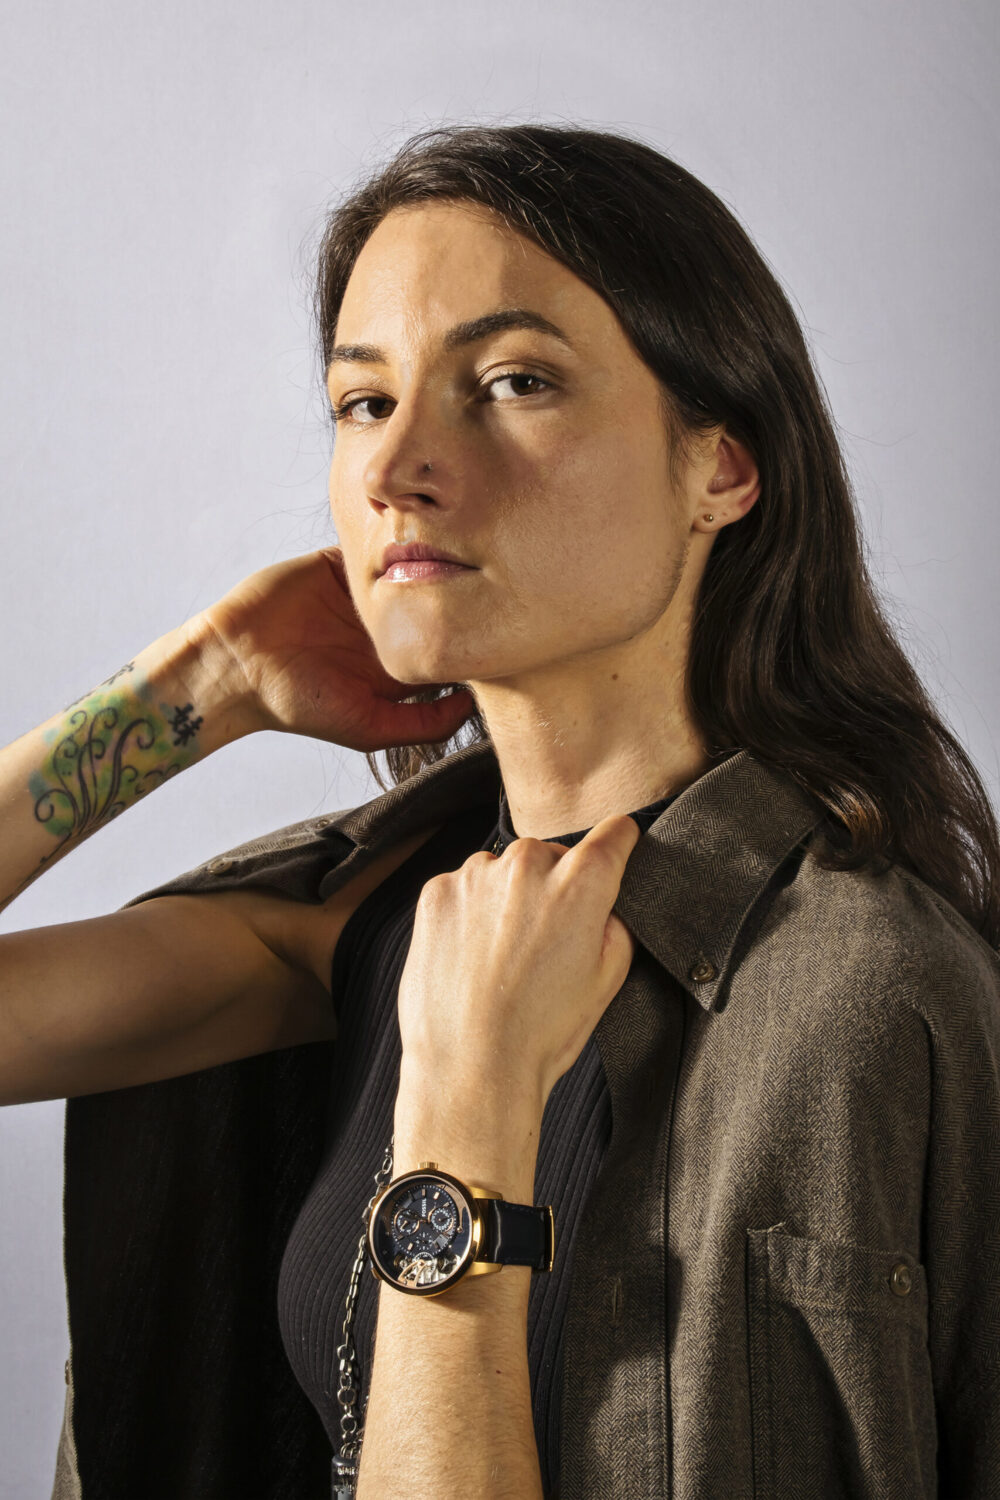 Studio portrait of woman wearing fossil watch